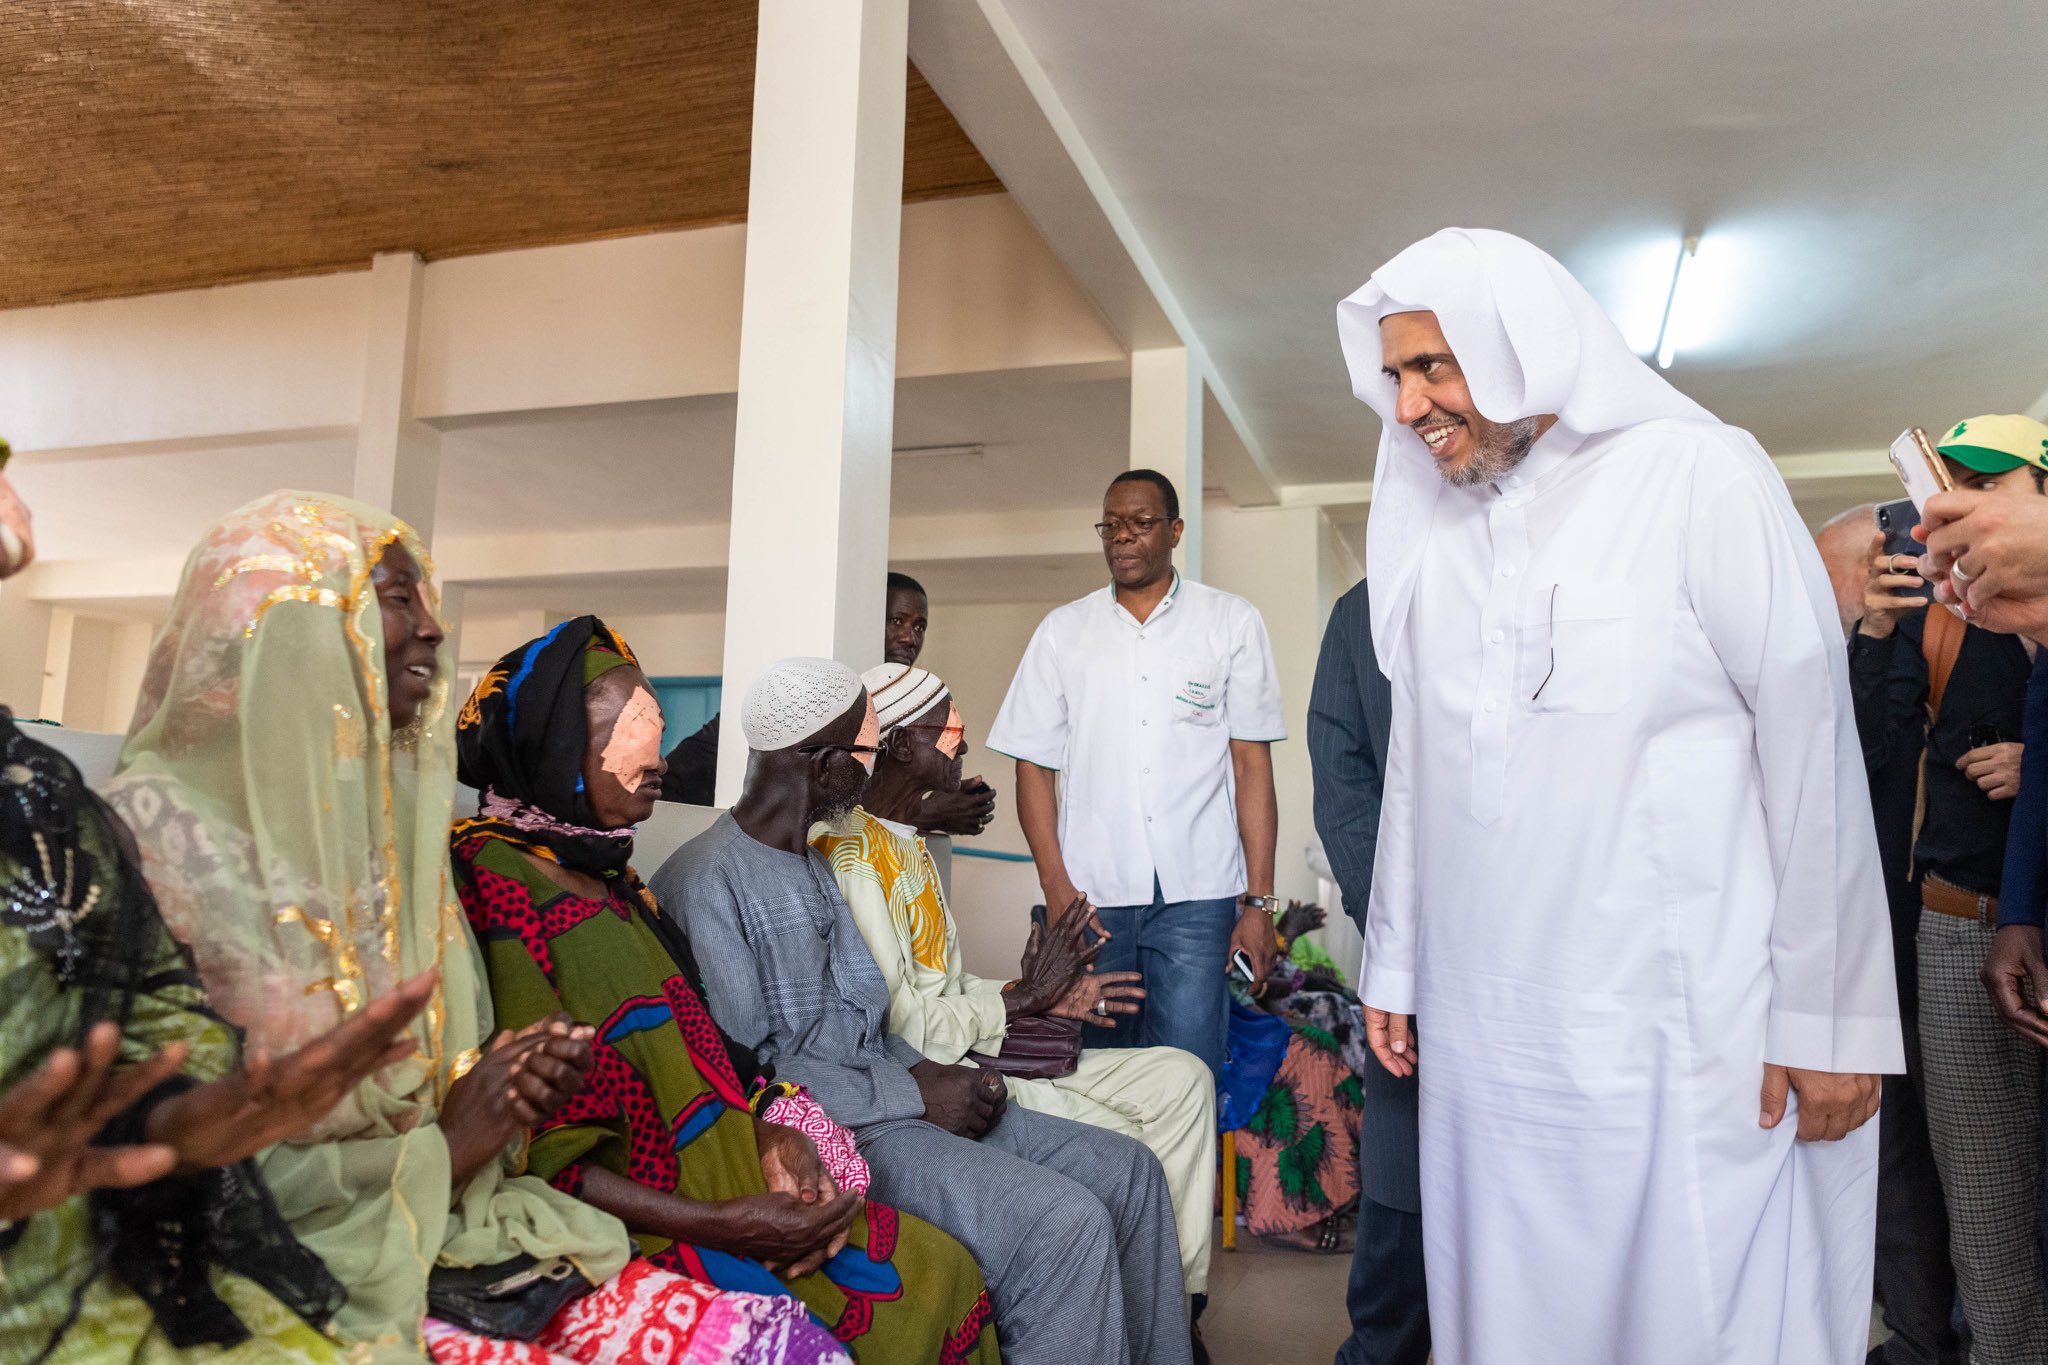 La LIM finance des soins médicaux à travers le monde, comme le traitement de la cataracte à l'hôpital de Dakar. L'initiative a profité à des centaines de patients sénégalais dans le besoin. 